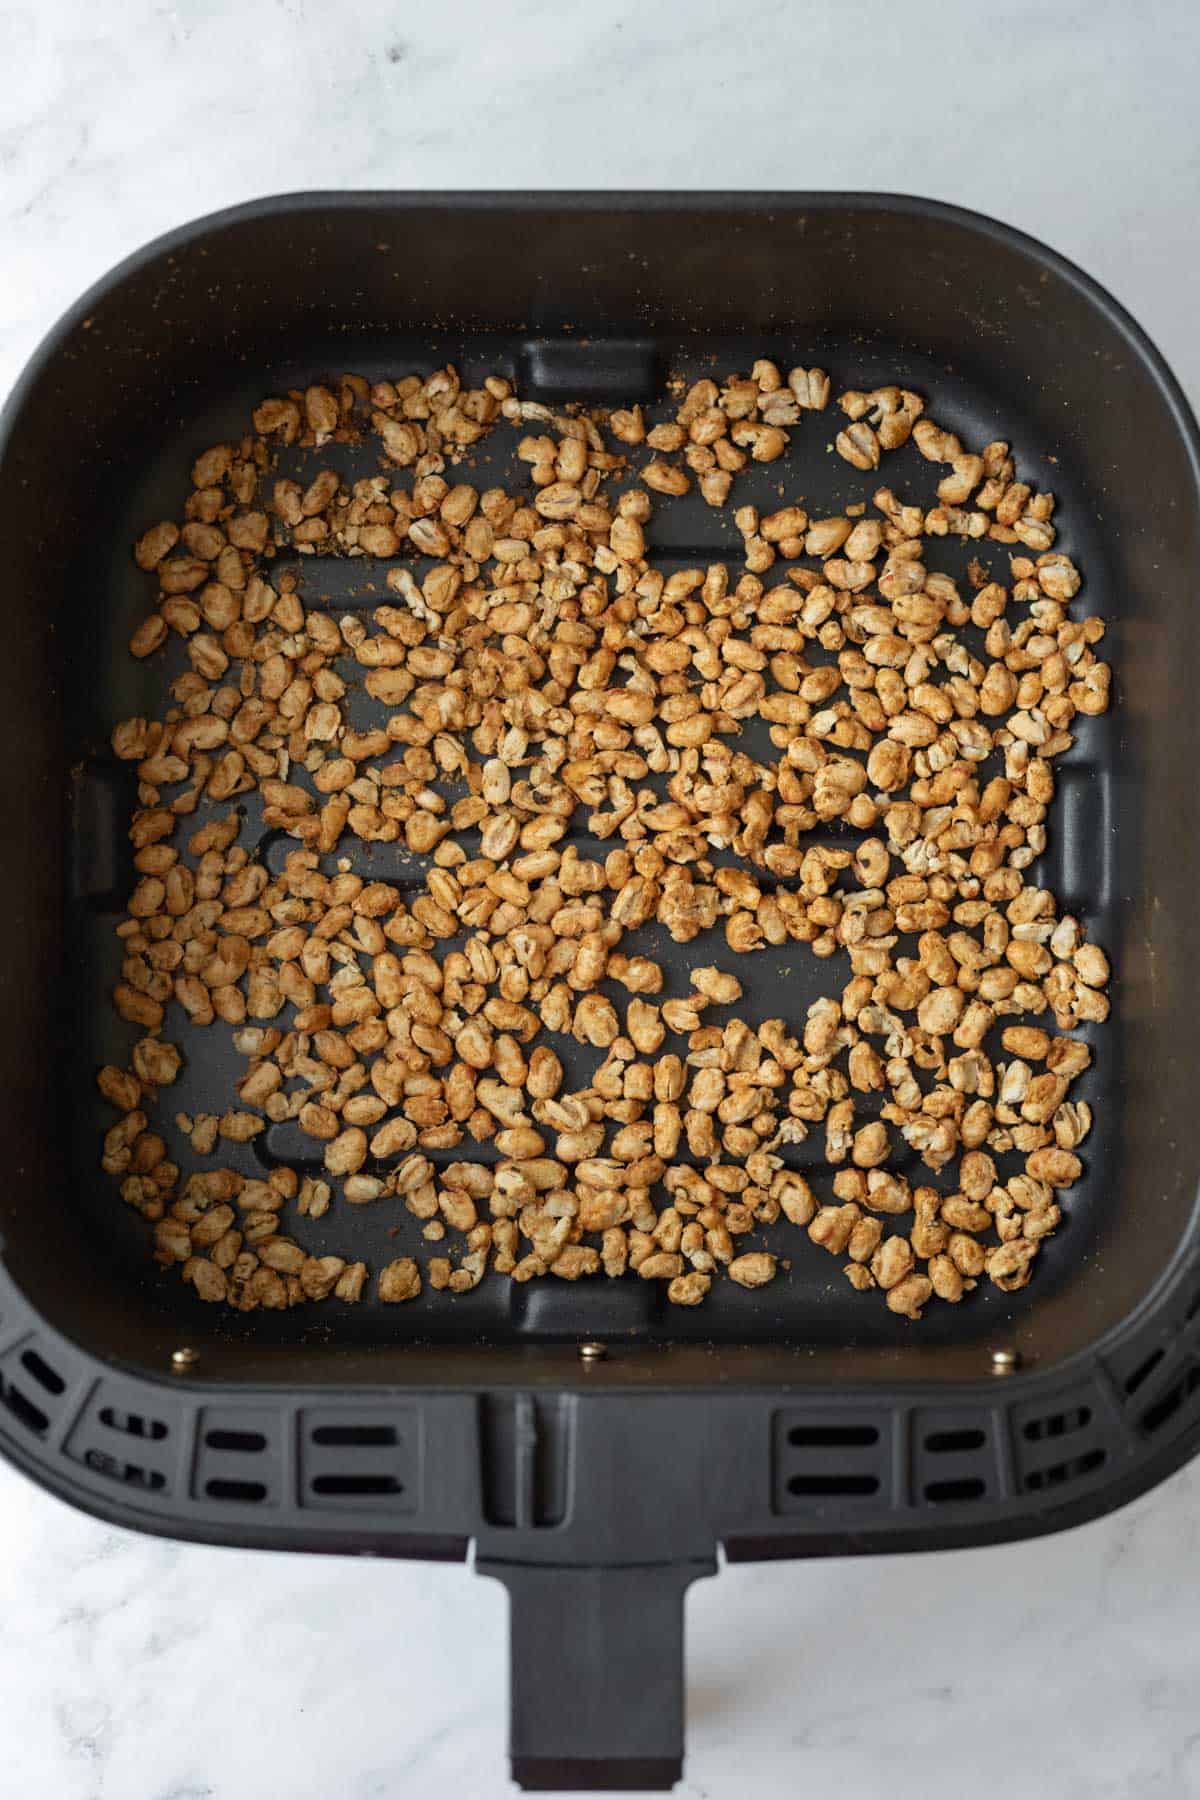 Crispy navy beans inside an air fryer basket.